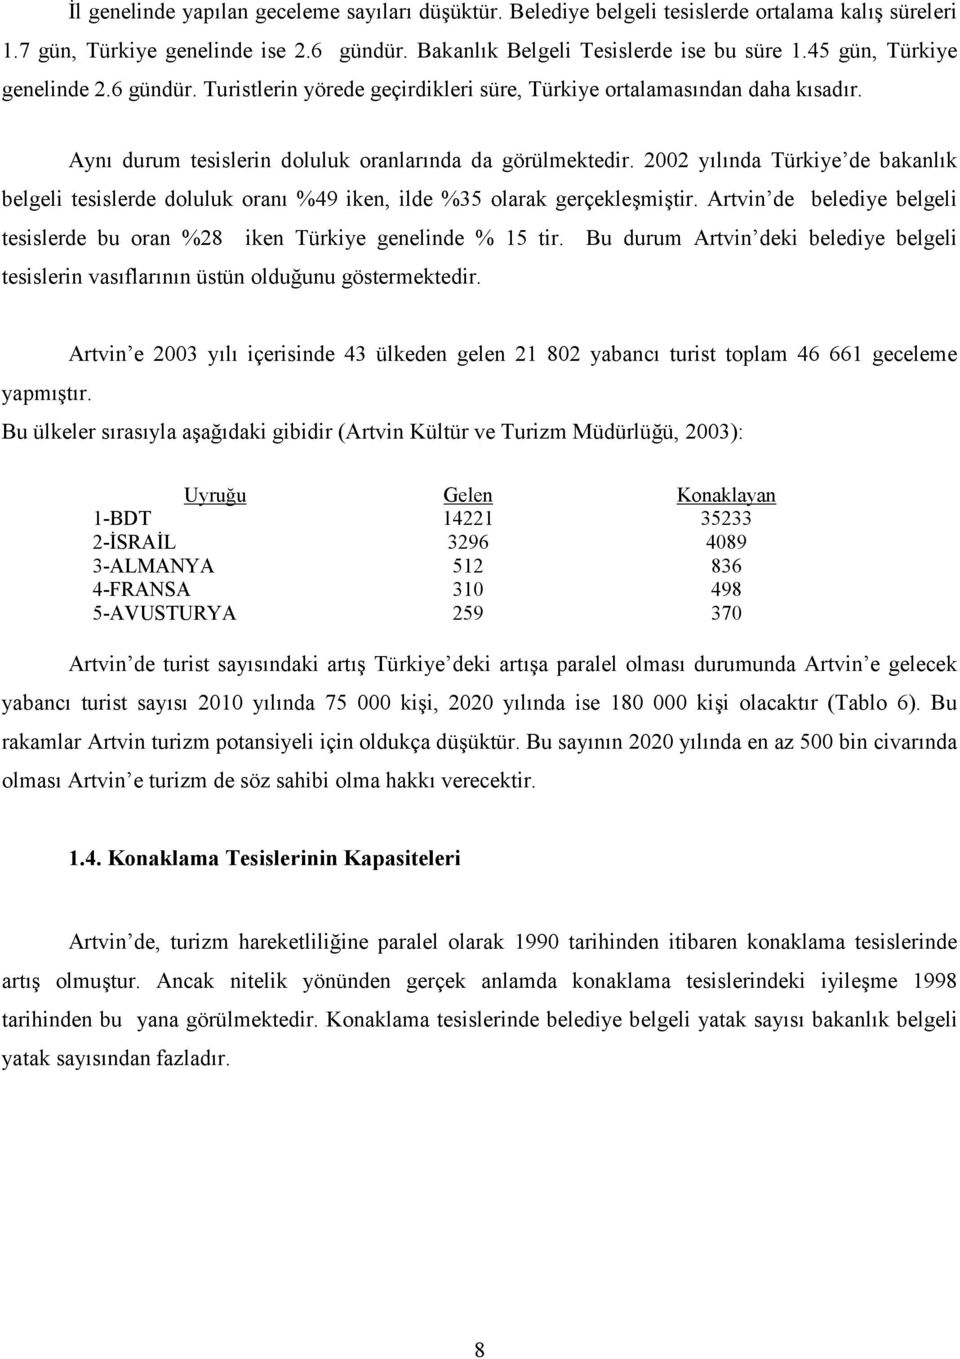 2002 ylnda Türkiye de bakanlk belgeli tesislerde doluluk oran %49 iken, ilde %35 olarak gerçekle9mi9tir. Artvin de belediye belgeli tesislerde bu oran %28 iken Türkiye genelinde % 15 tir.